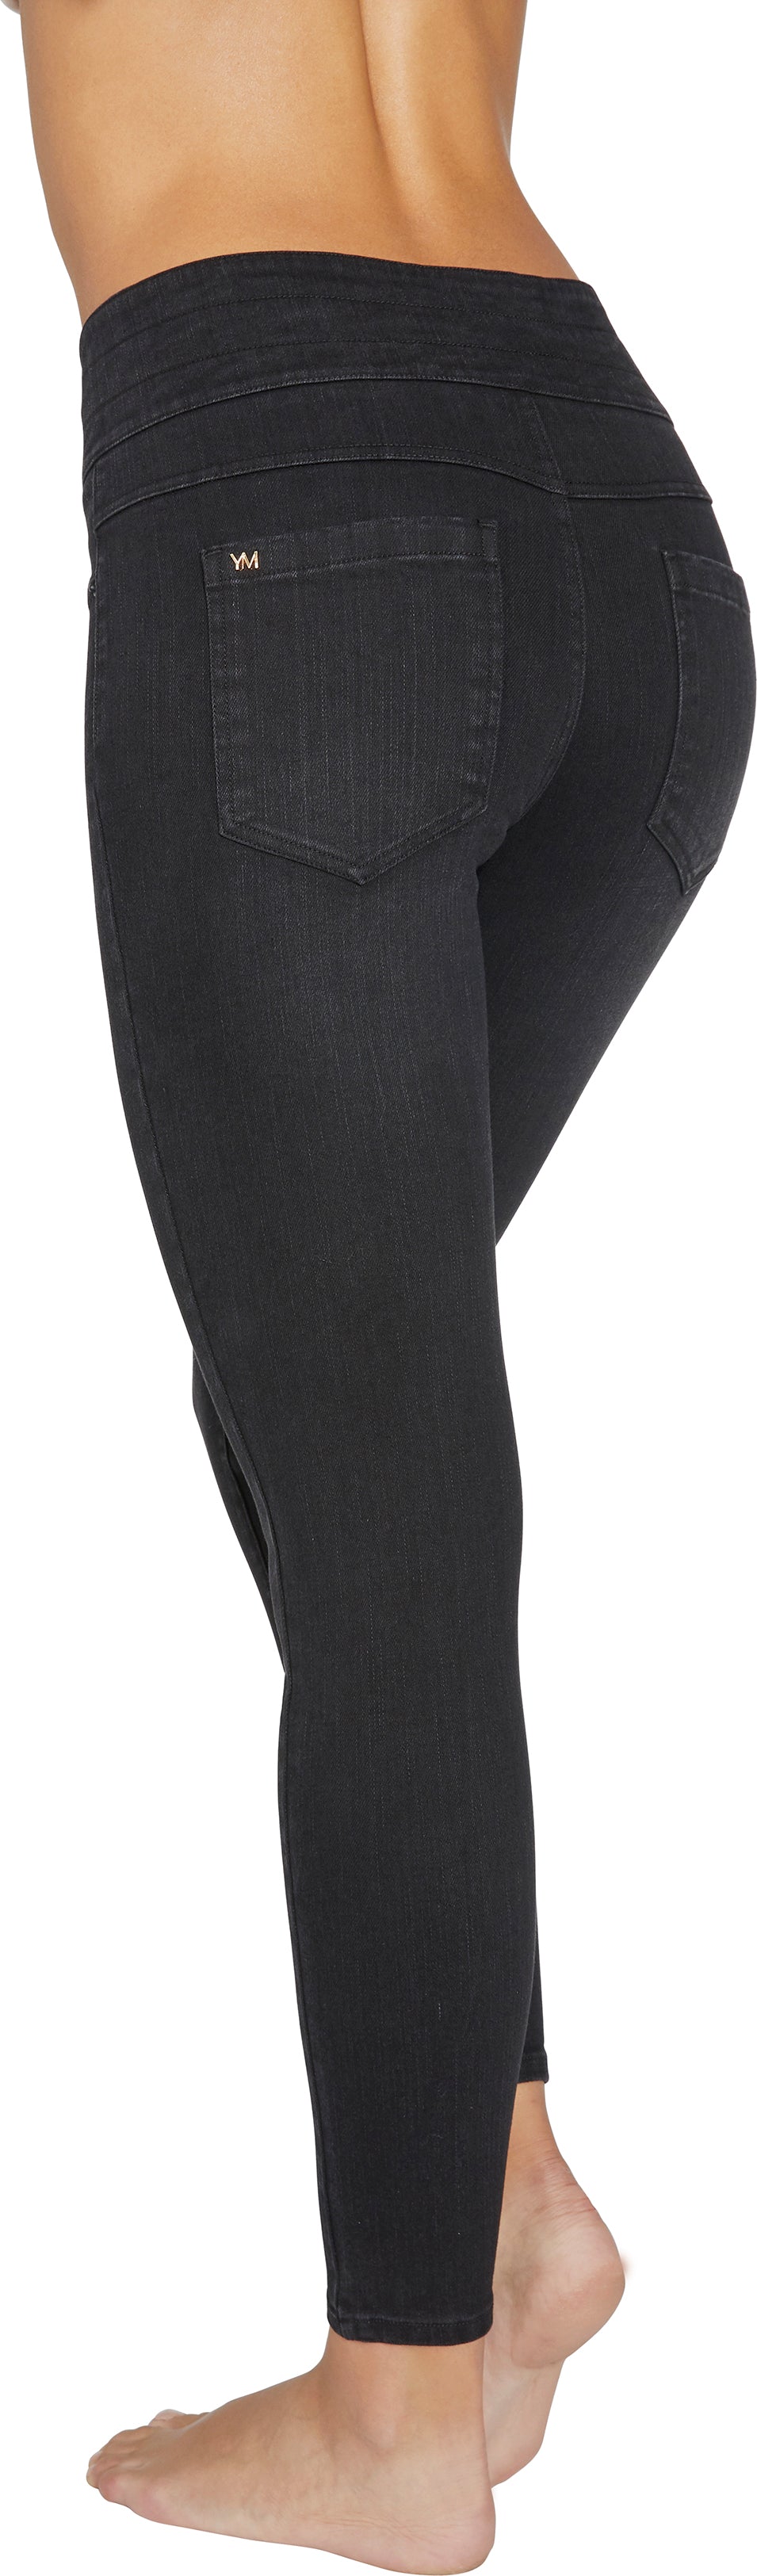 Ysabel Mora 70268 Jeggings - black high waisted denim leggings